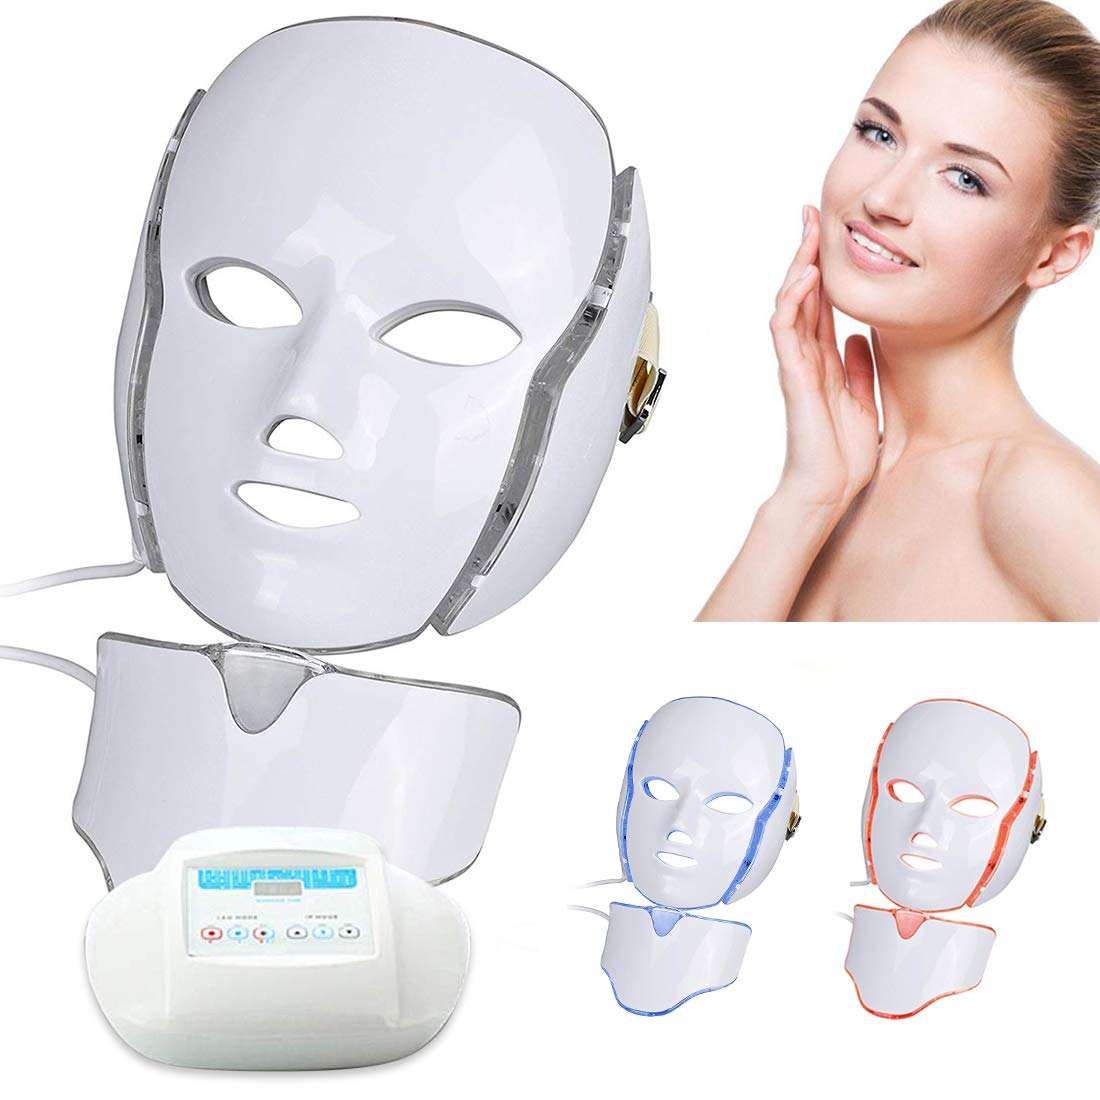 Гаджеты для лица для домашнего. Светодиодная терапия для лица фотодинамическая led-маска. Светодиодная led маска с функцией микротоков. FOREO массажер микротоки. Косметическая маска led маска для ФДТ.